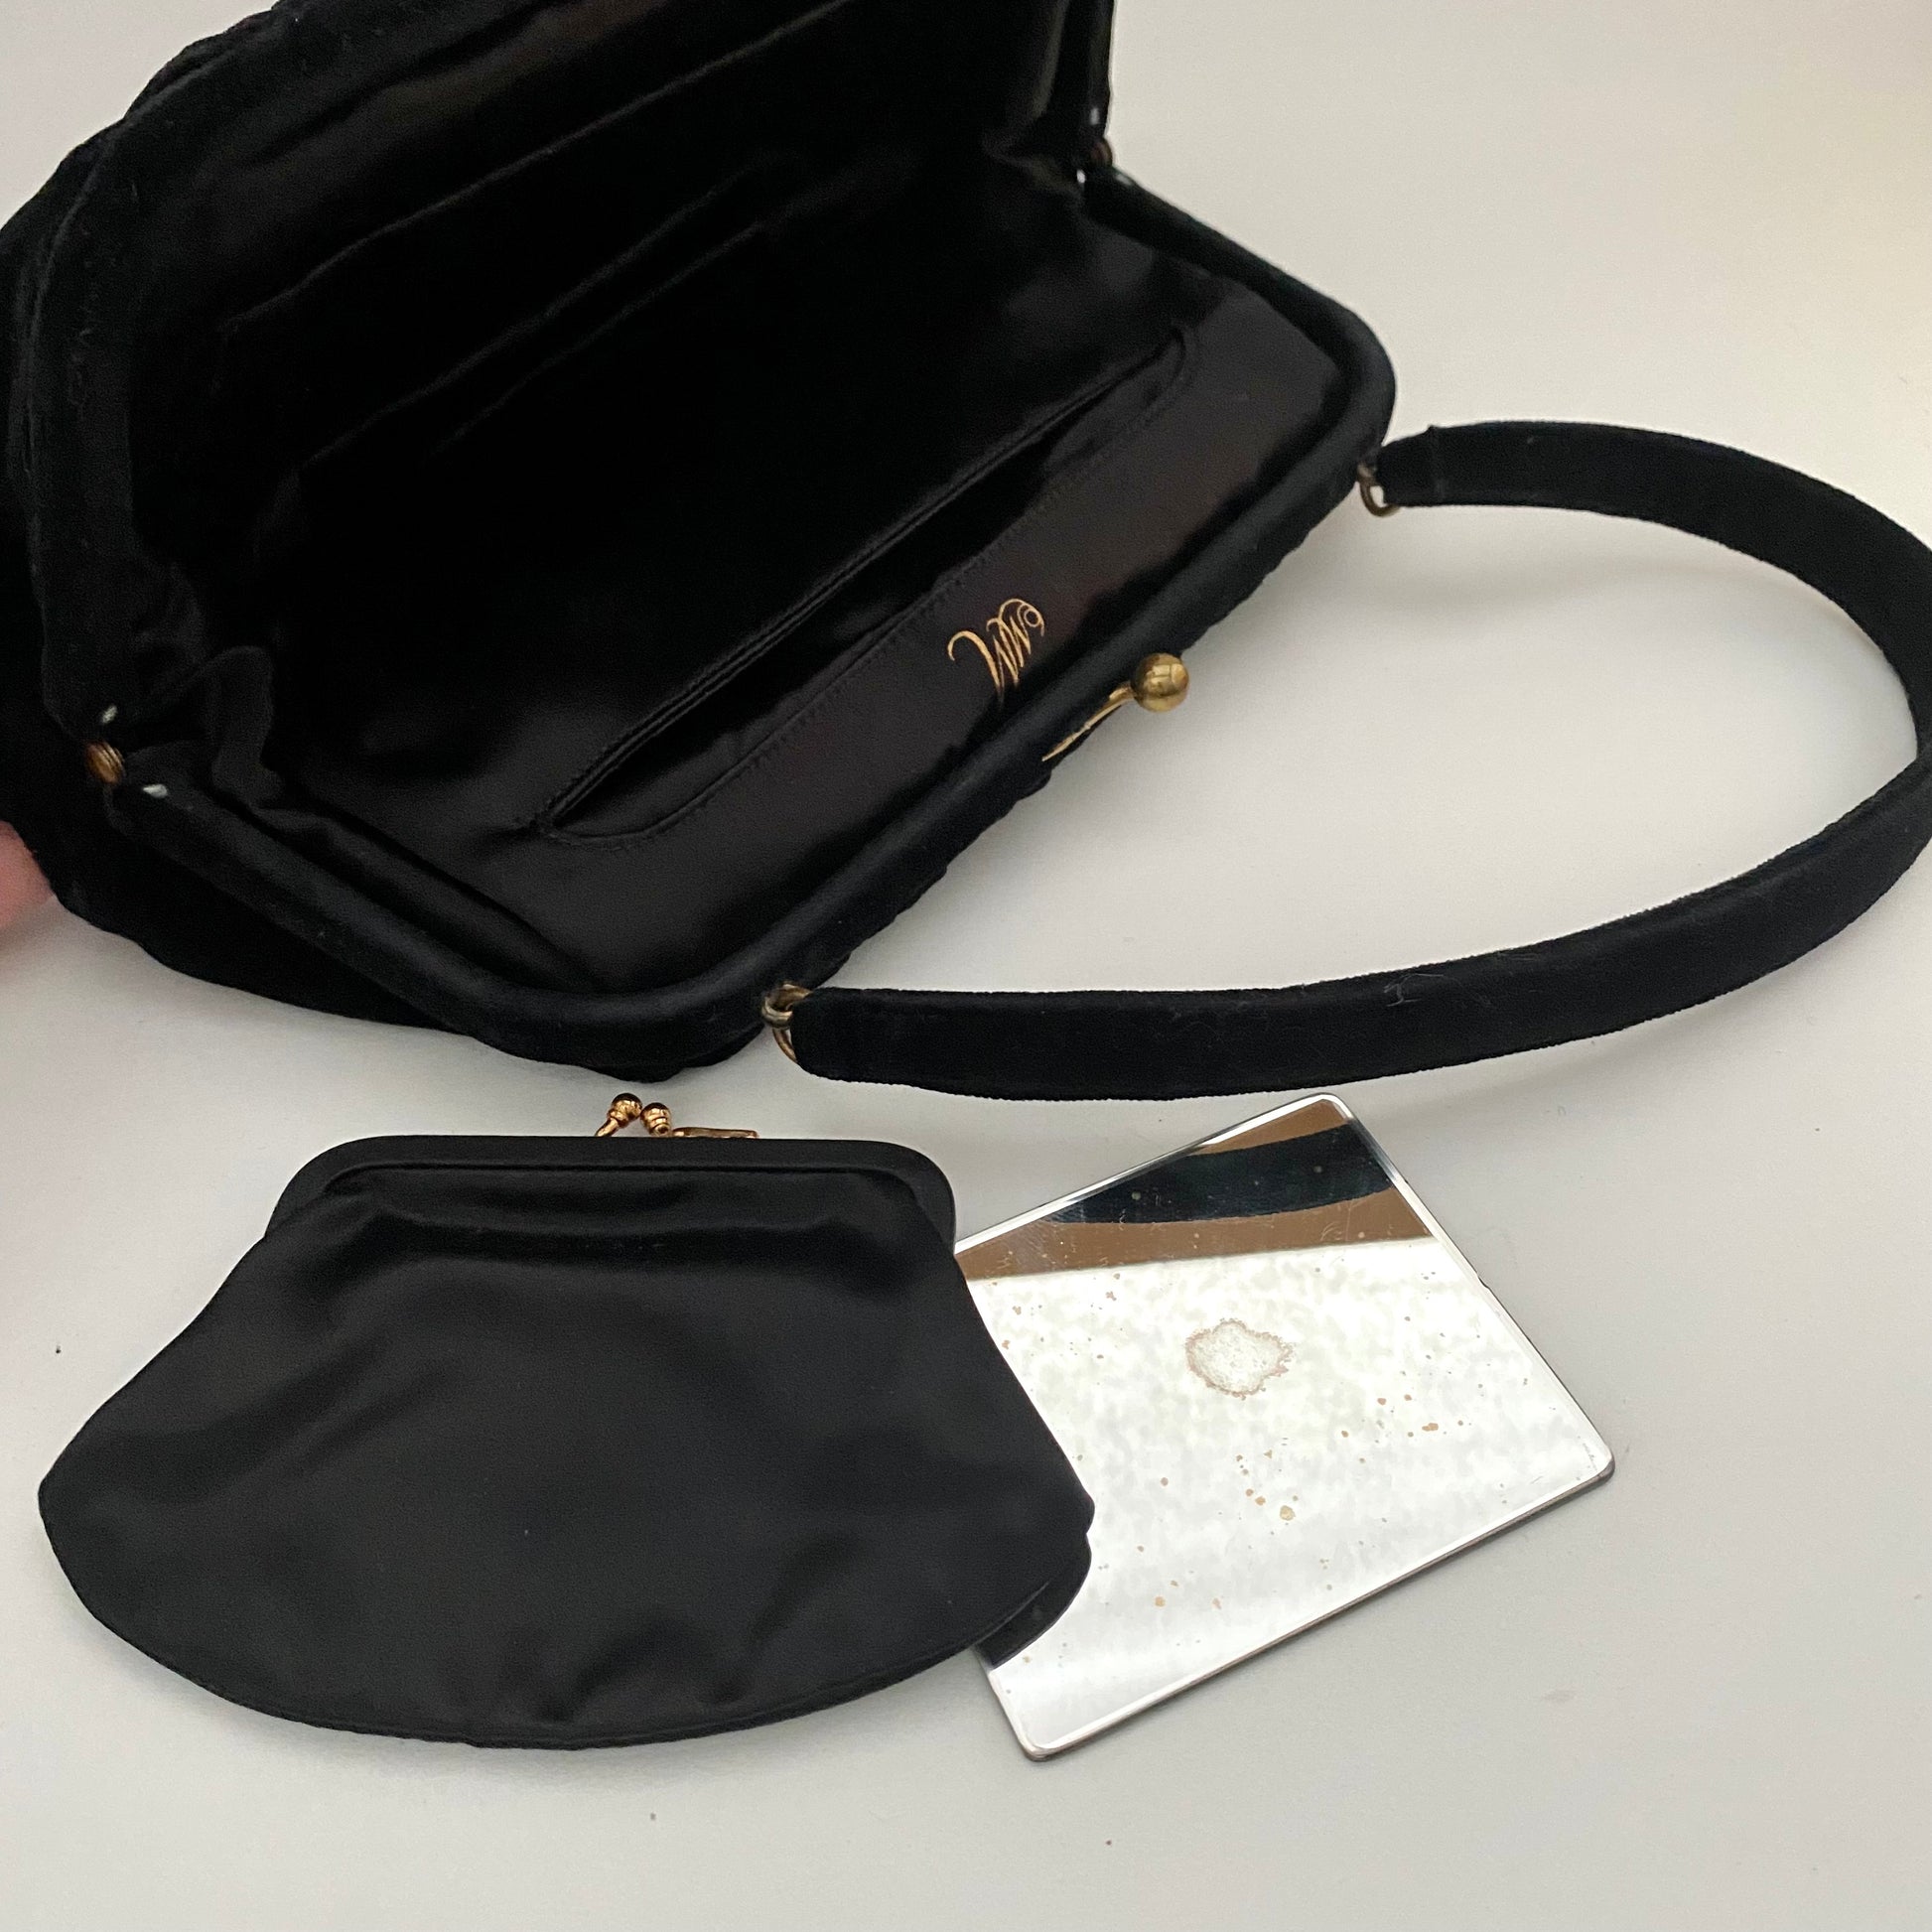 Vintage Morris Moskowitz MM Leather Bag Handbag Purse